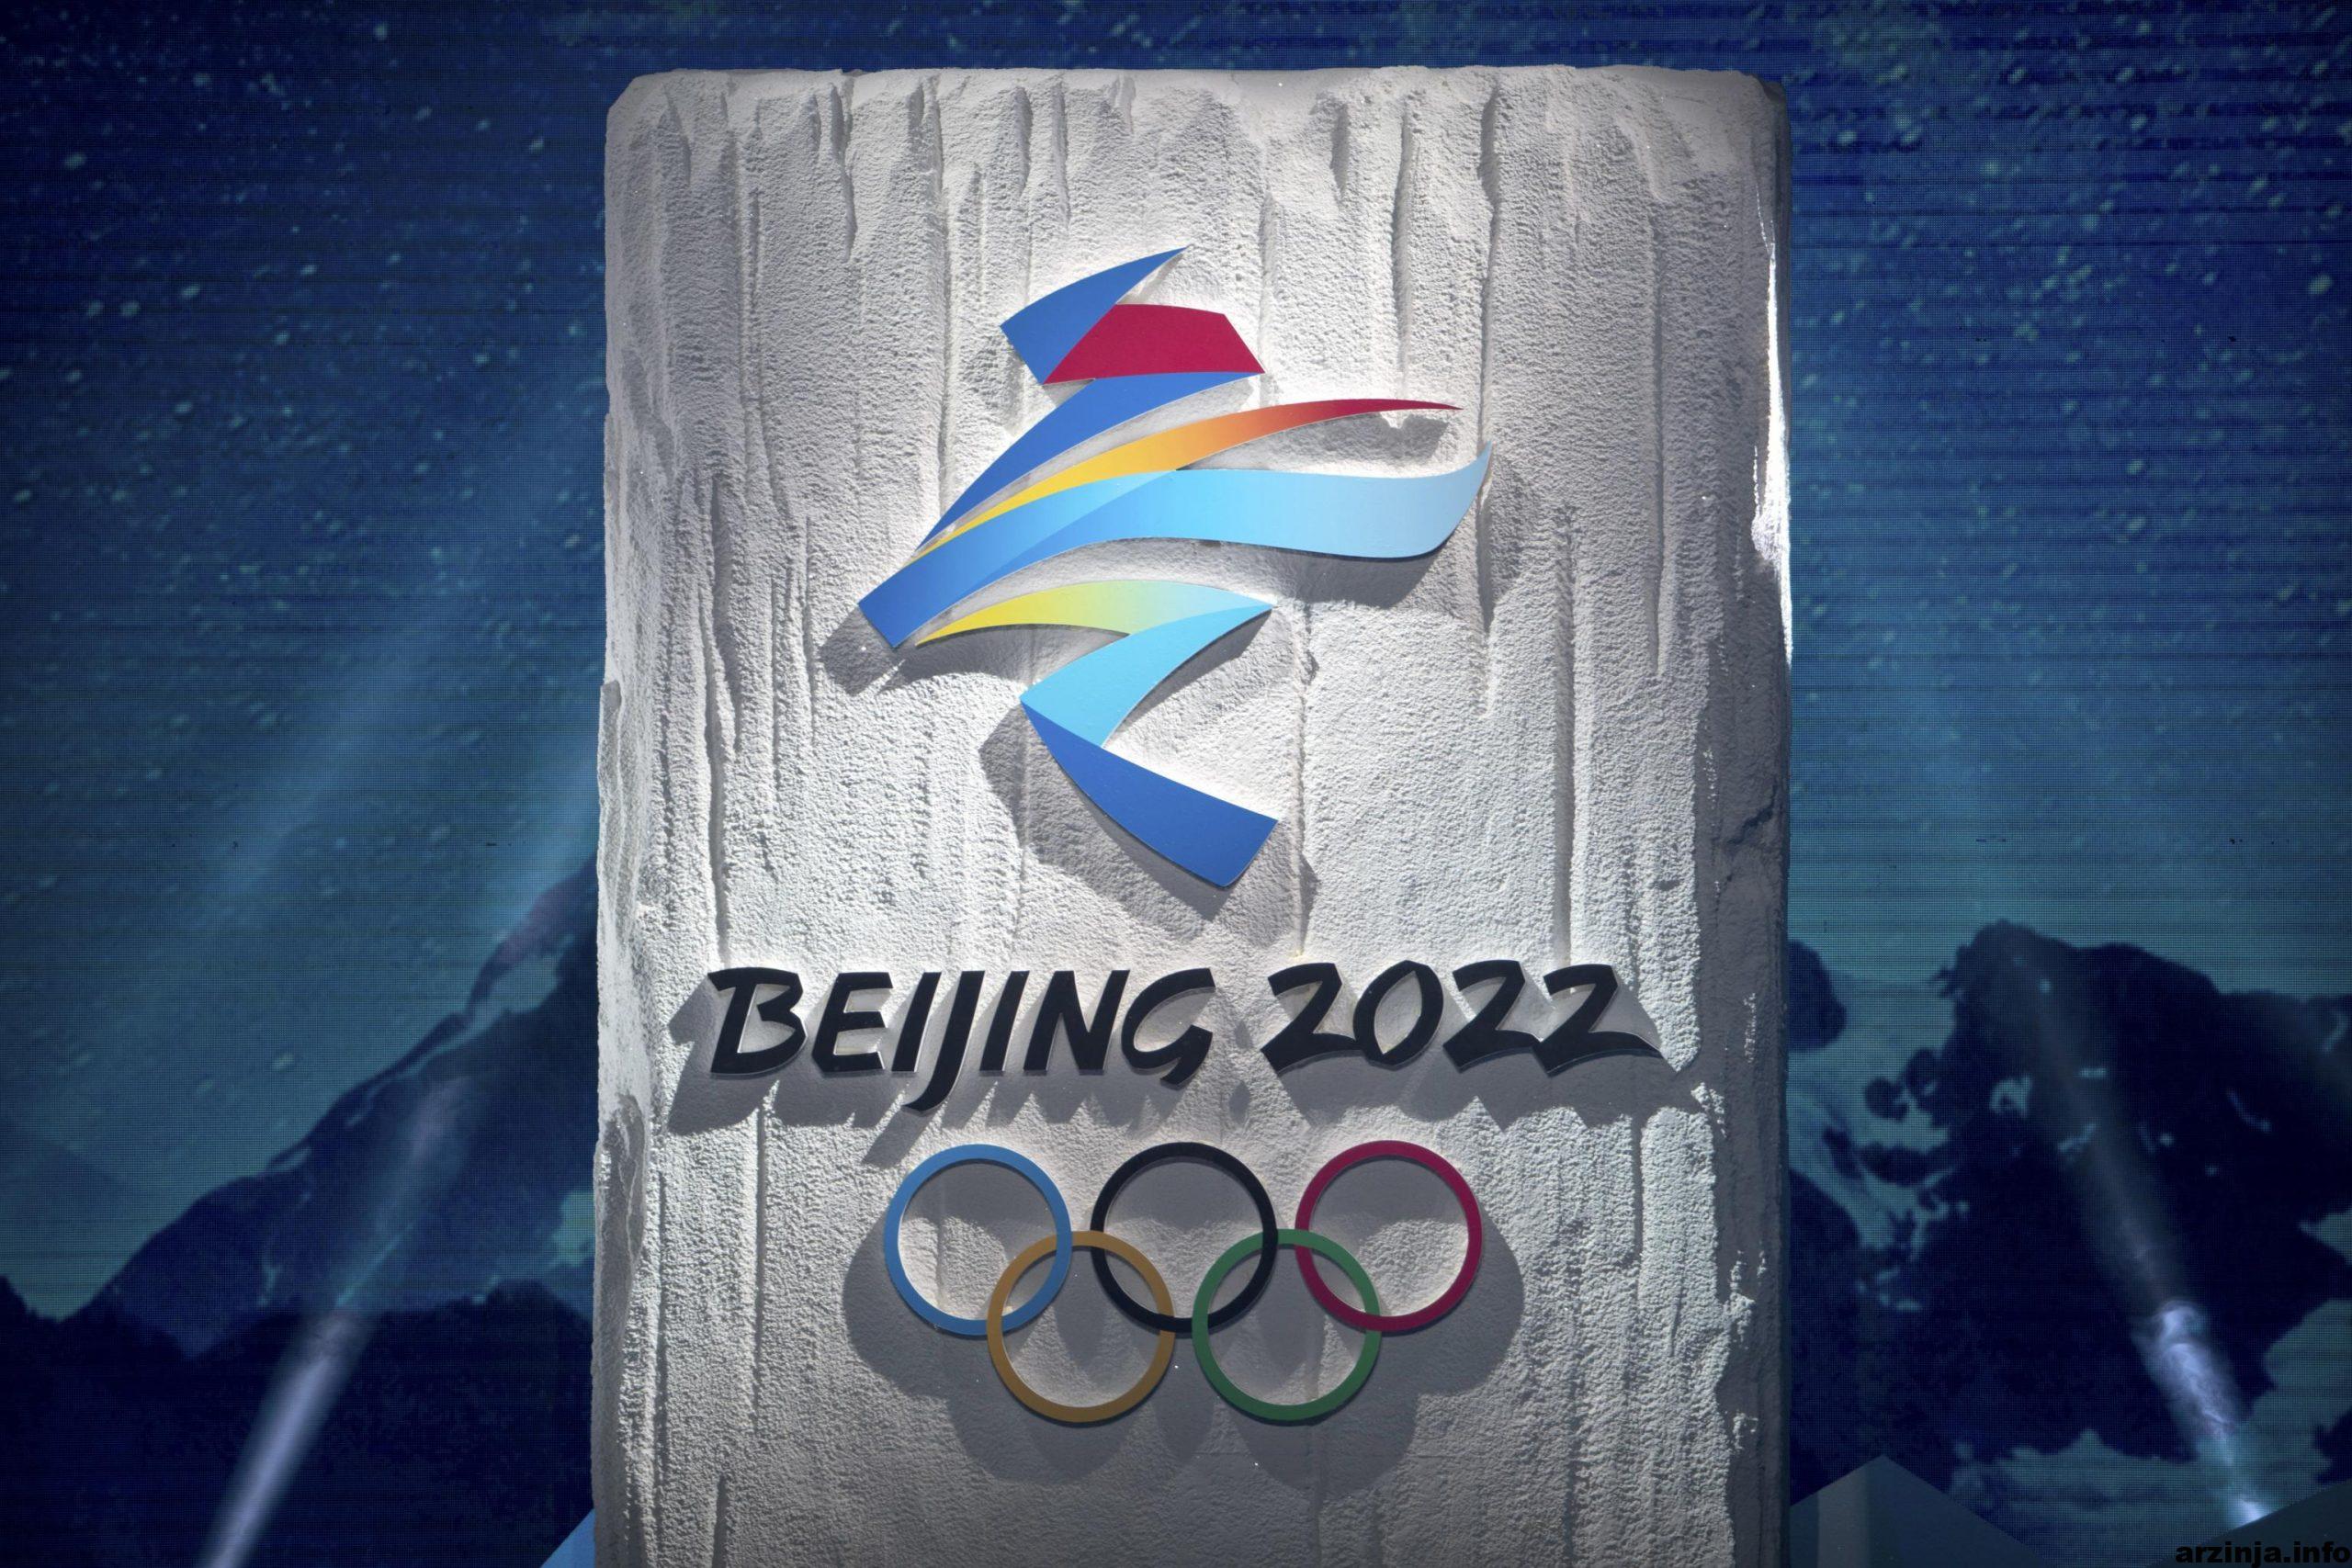 یوآن دیجیتال در المپیک زمستانه ی سال 2022 استفاده می شود